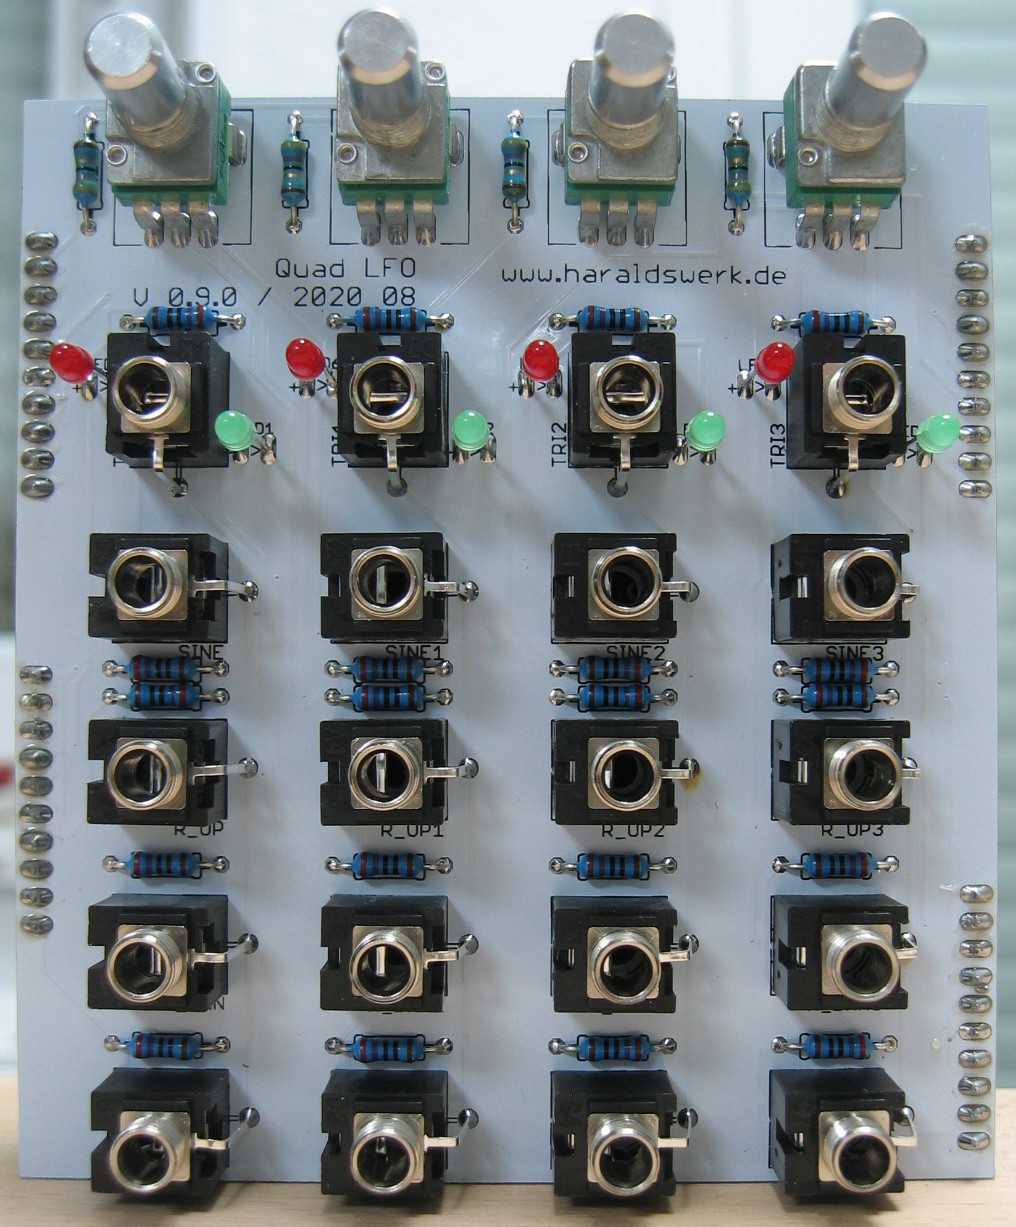 Quad LFO populated control PCB